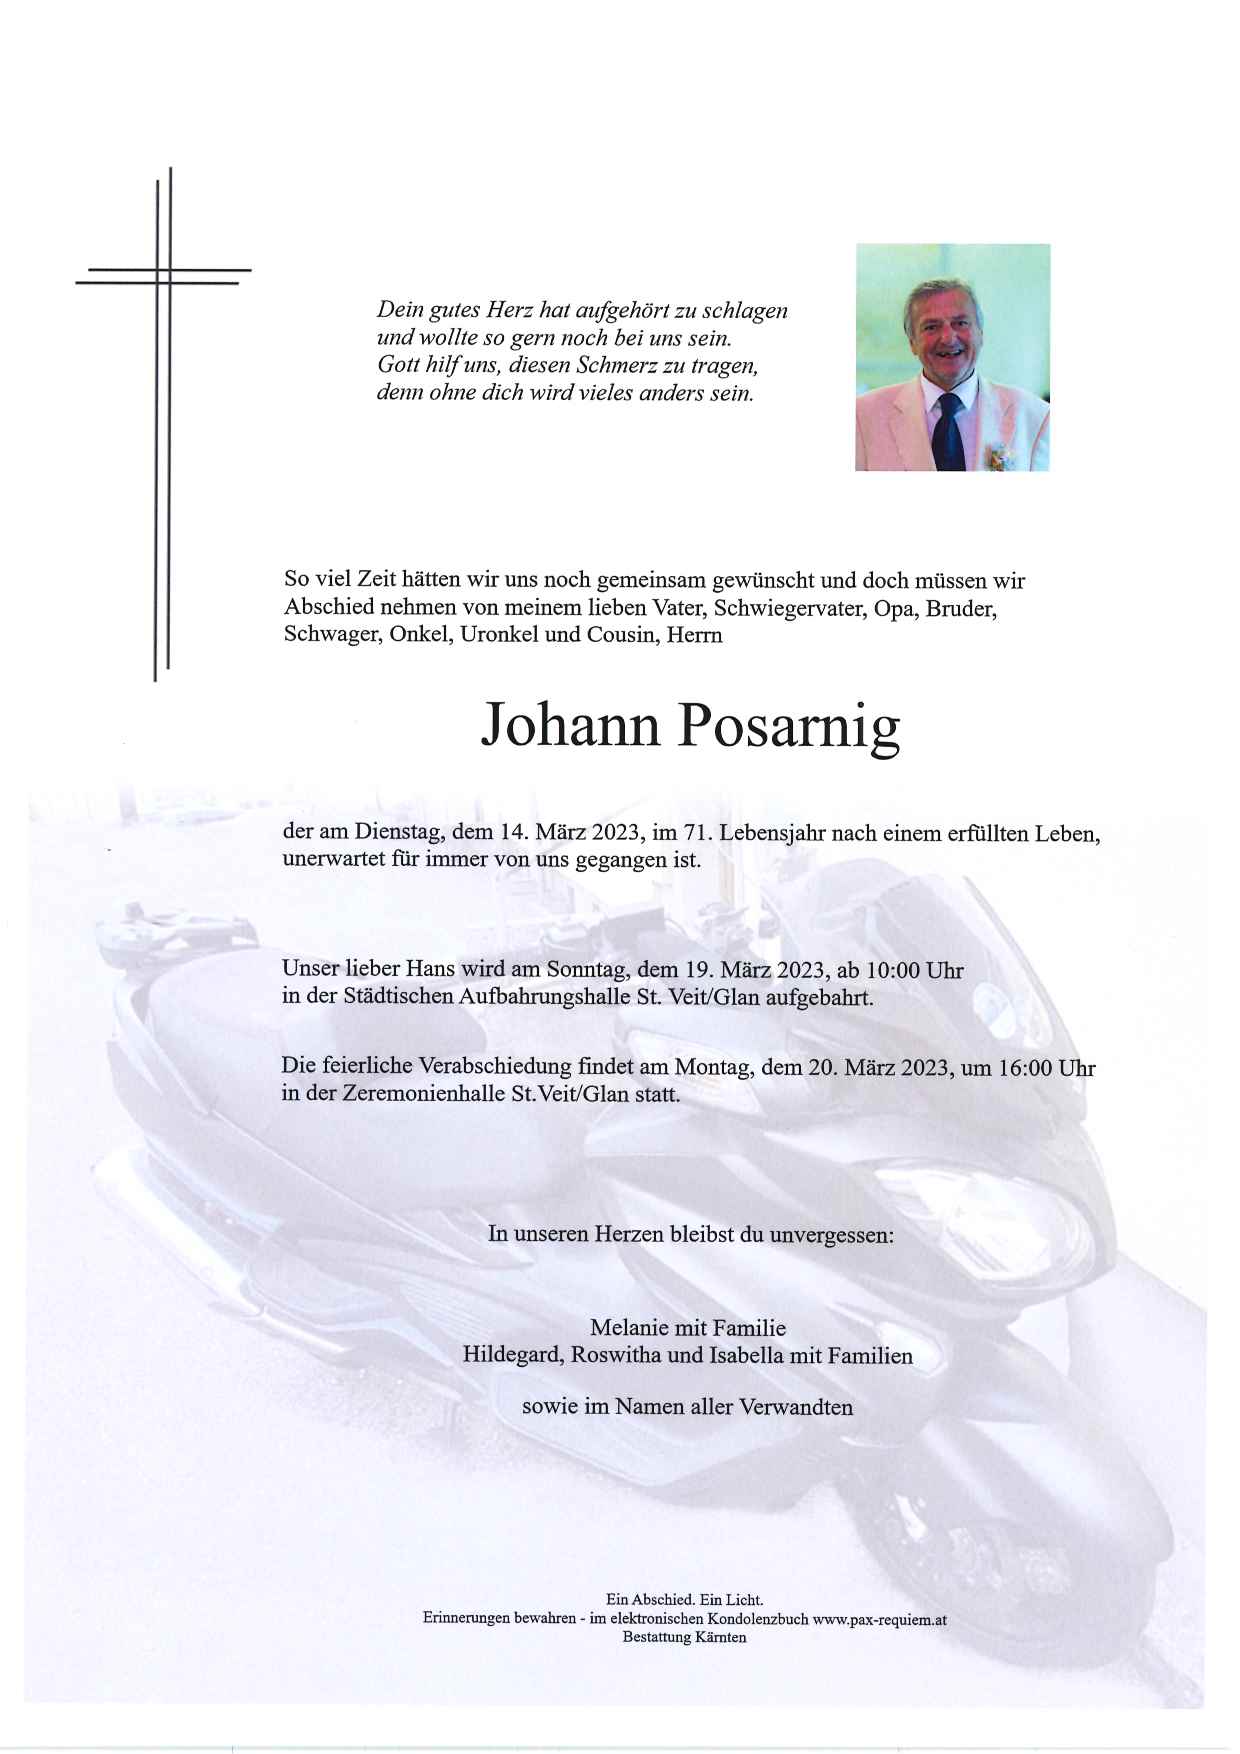 Johann Posarnig